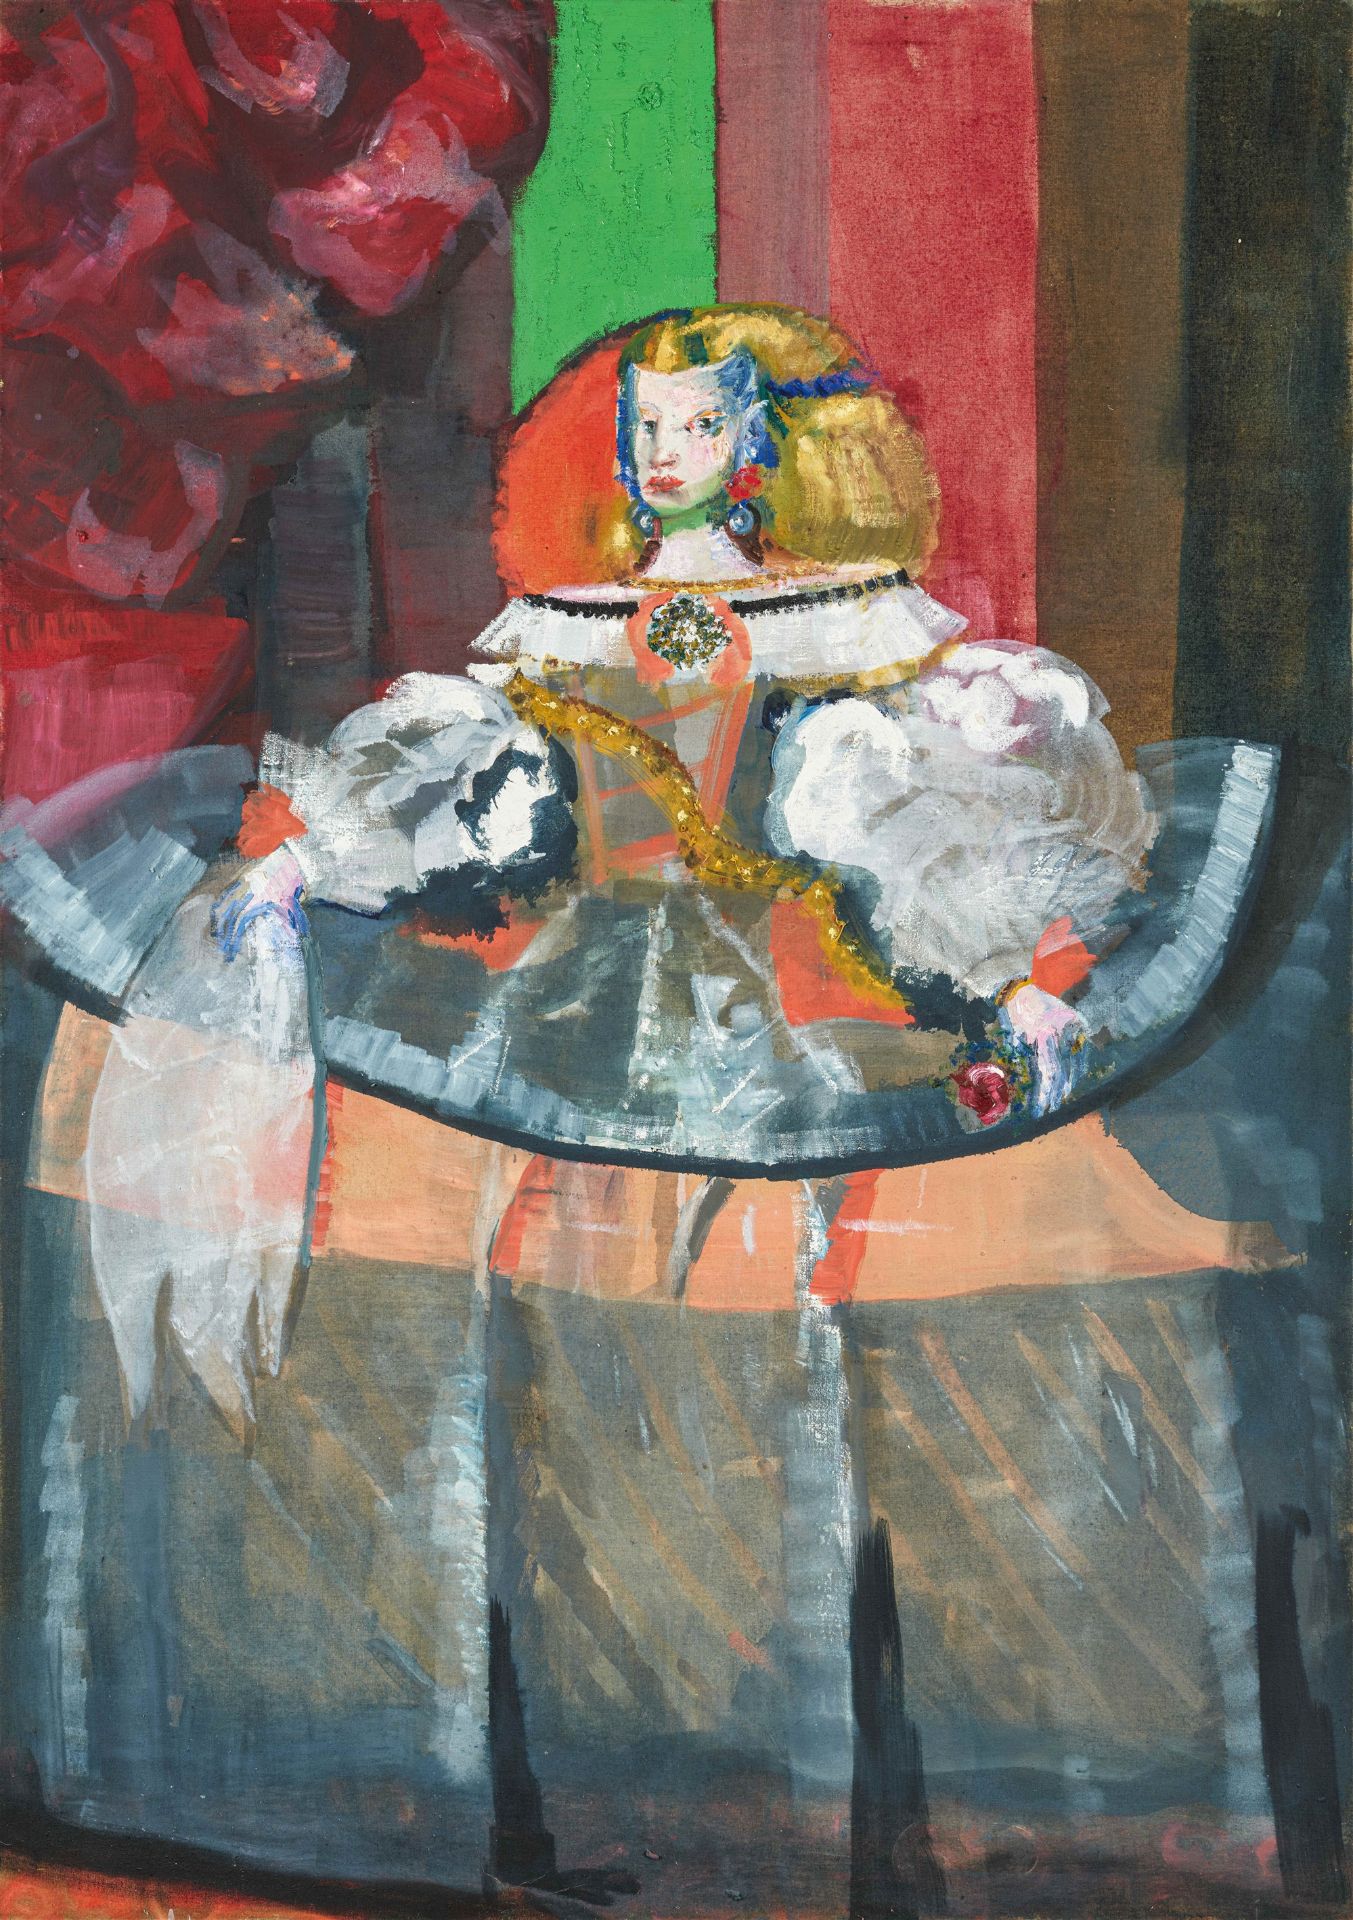 Rainer Fetting, Infantin Margarita, Velázquez Inspiration